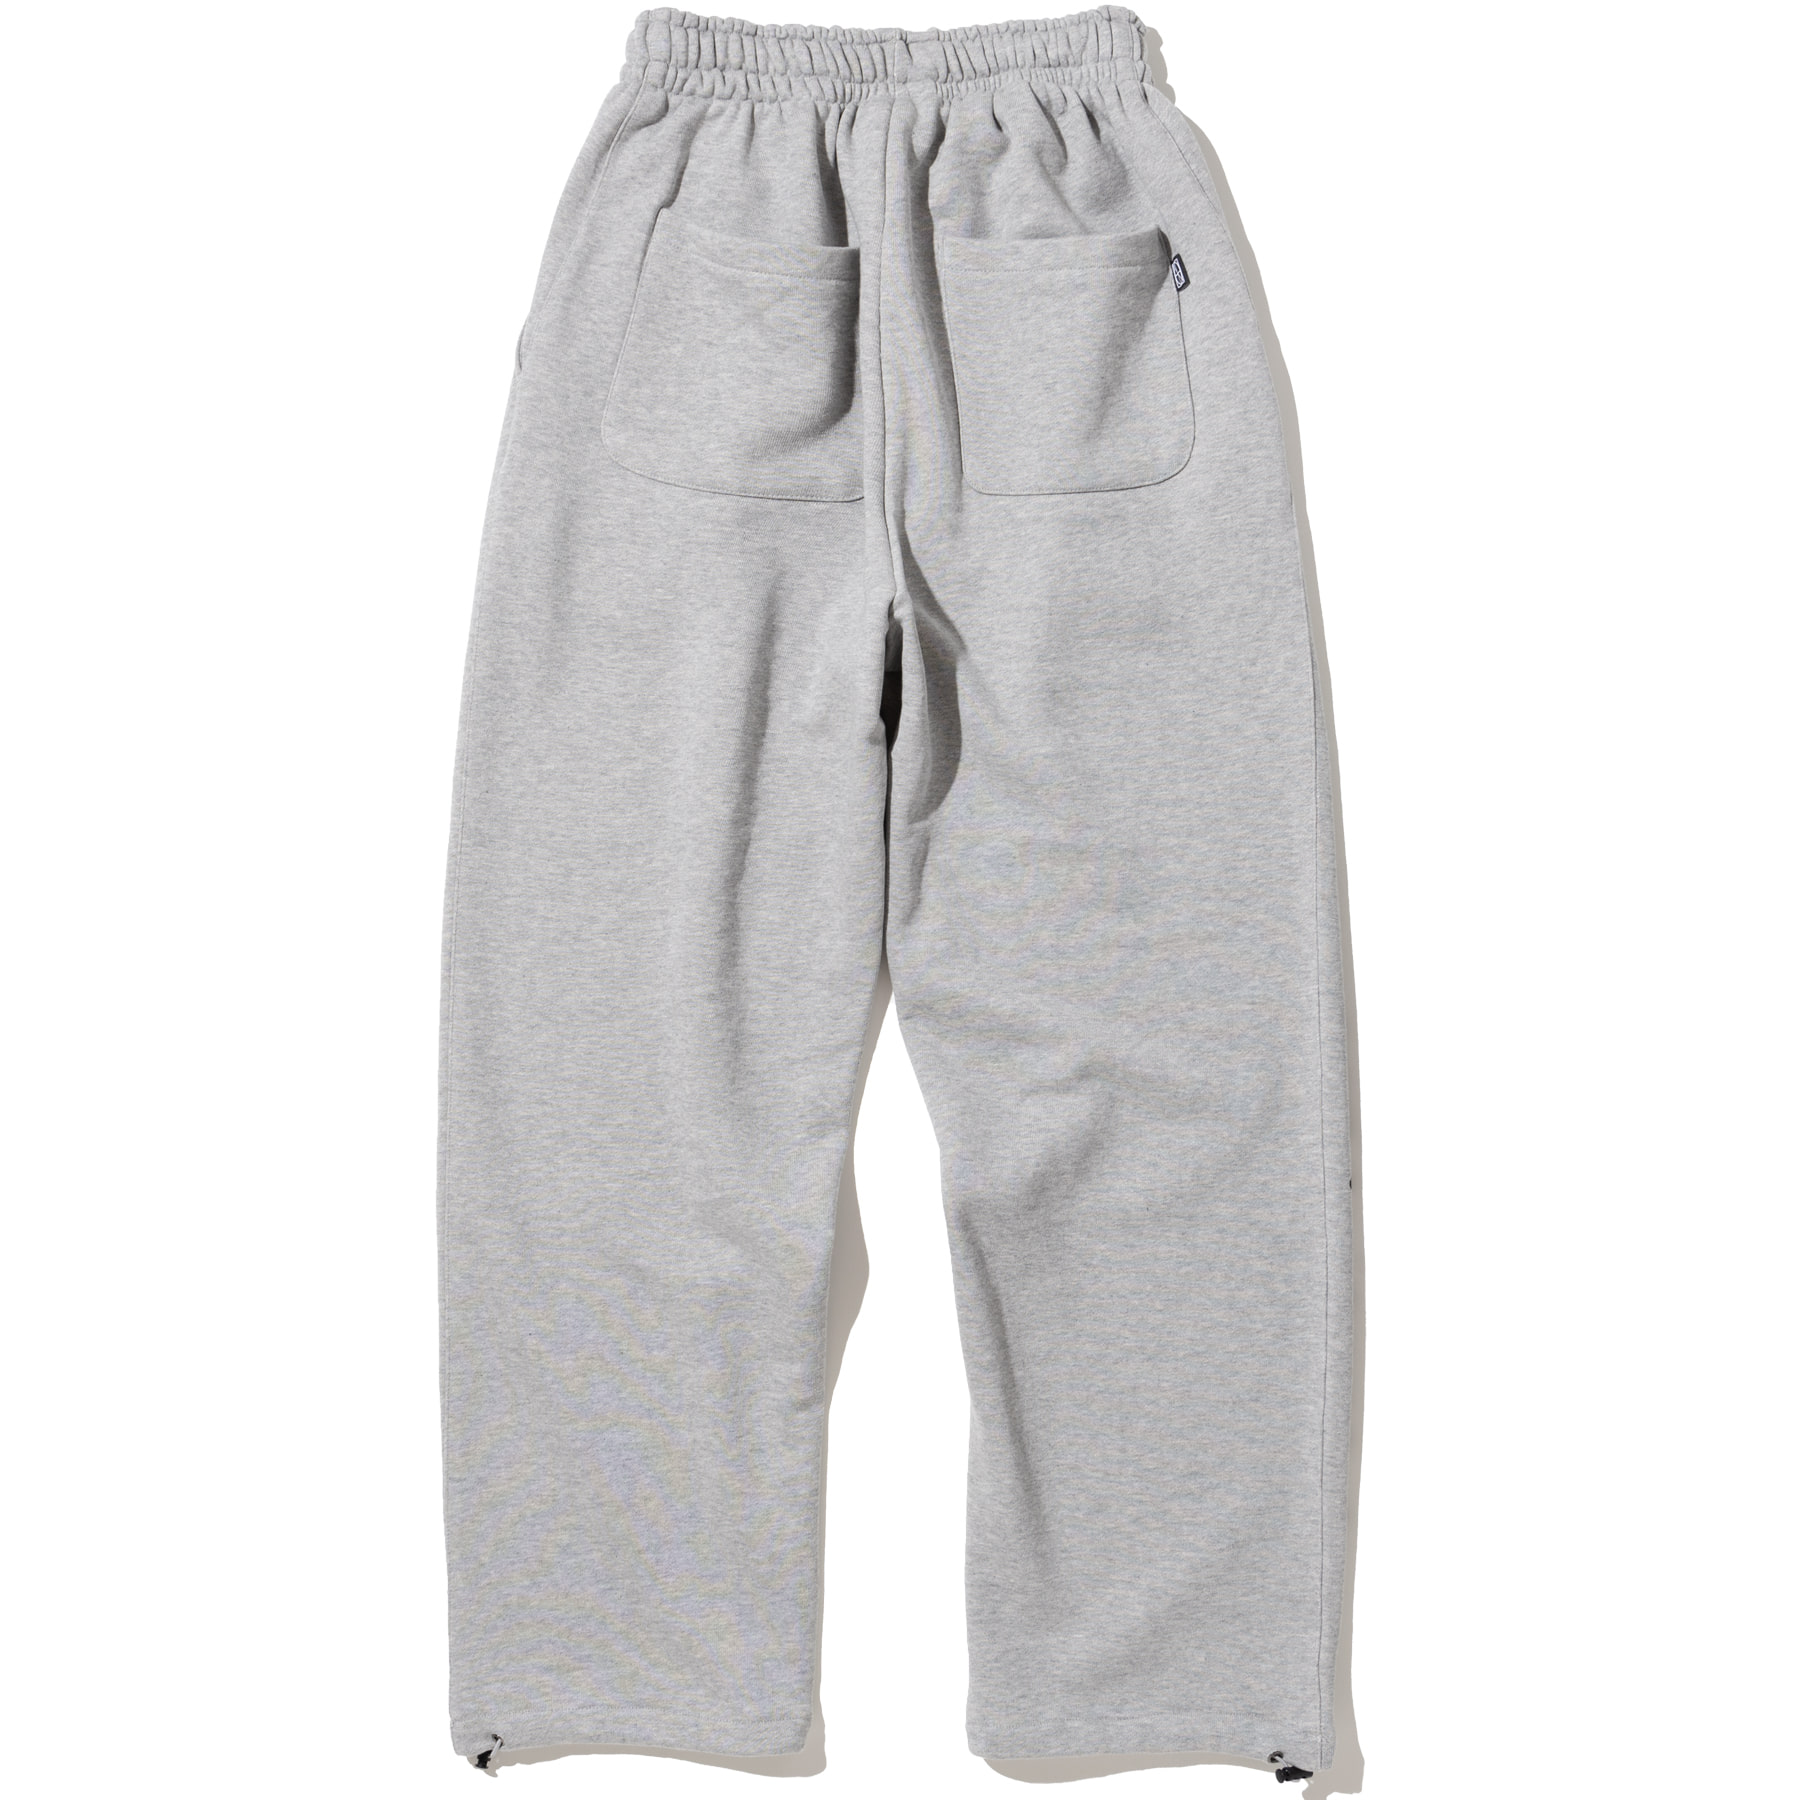 Brush NFND Logo String Sweat Pants - Grey,NOT4NERD